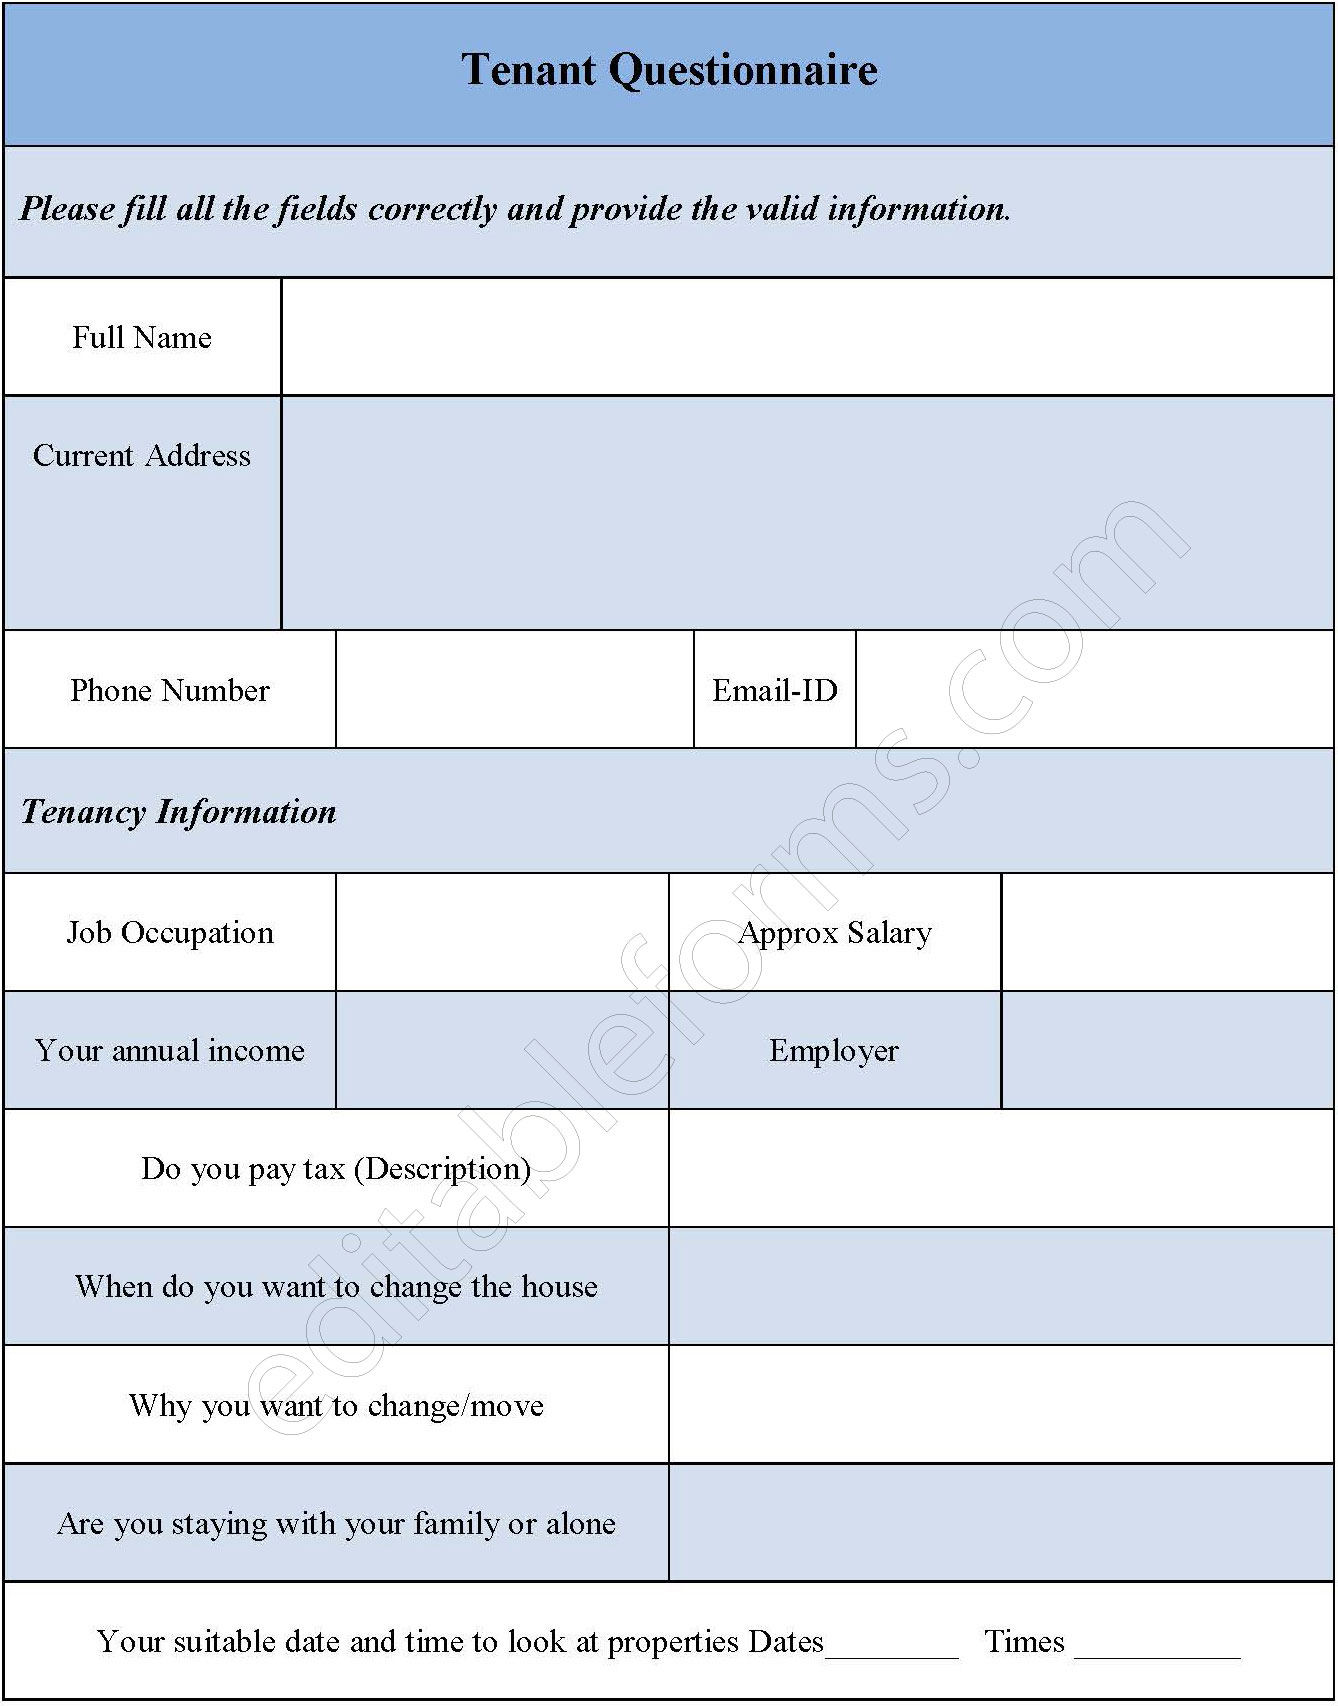 Tenant Questionnaire Form